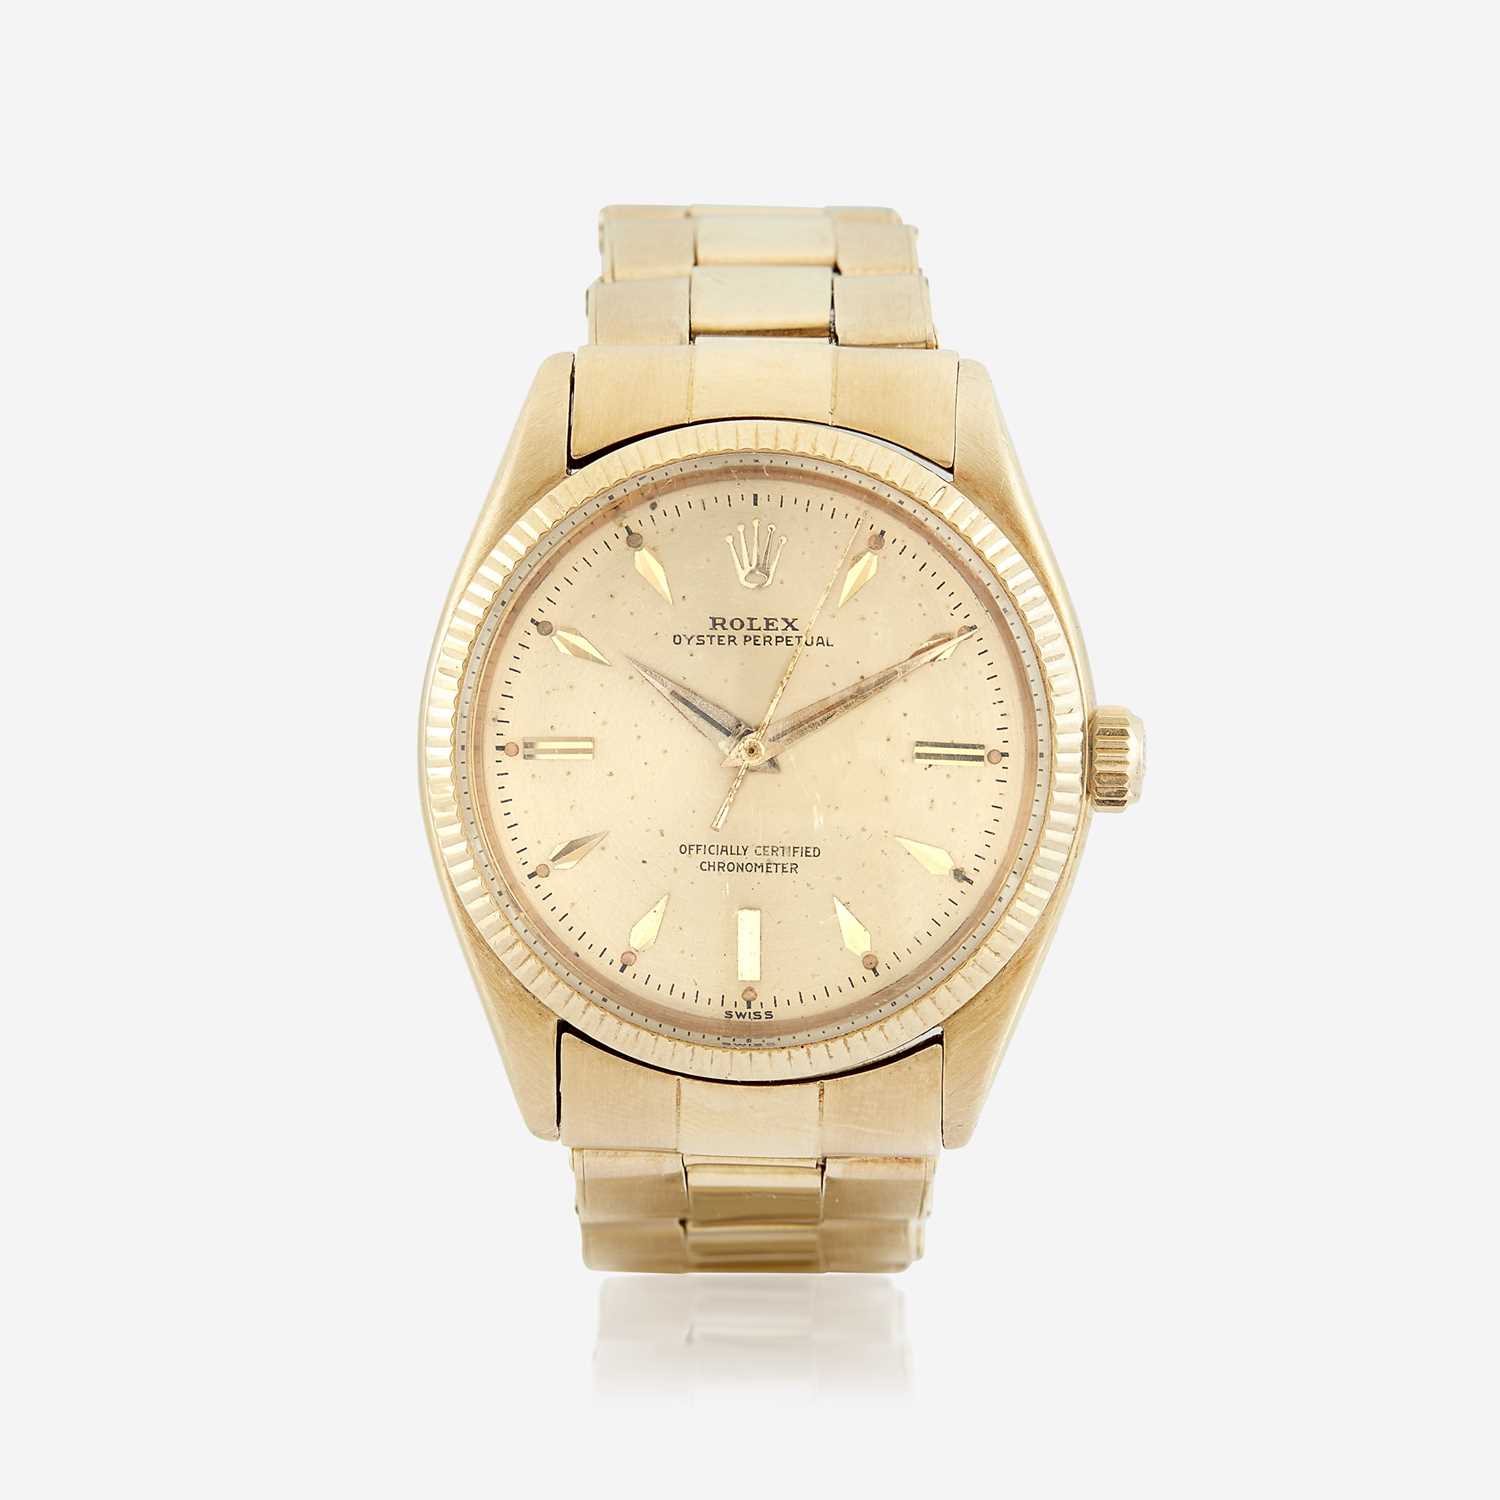 Lot 120 - An eighteen karat gold, automatic, bracelet wristwatch, Rolex